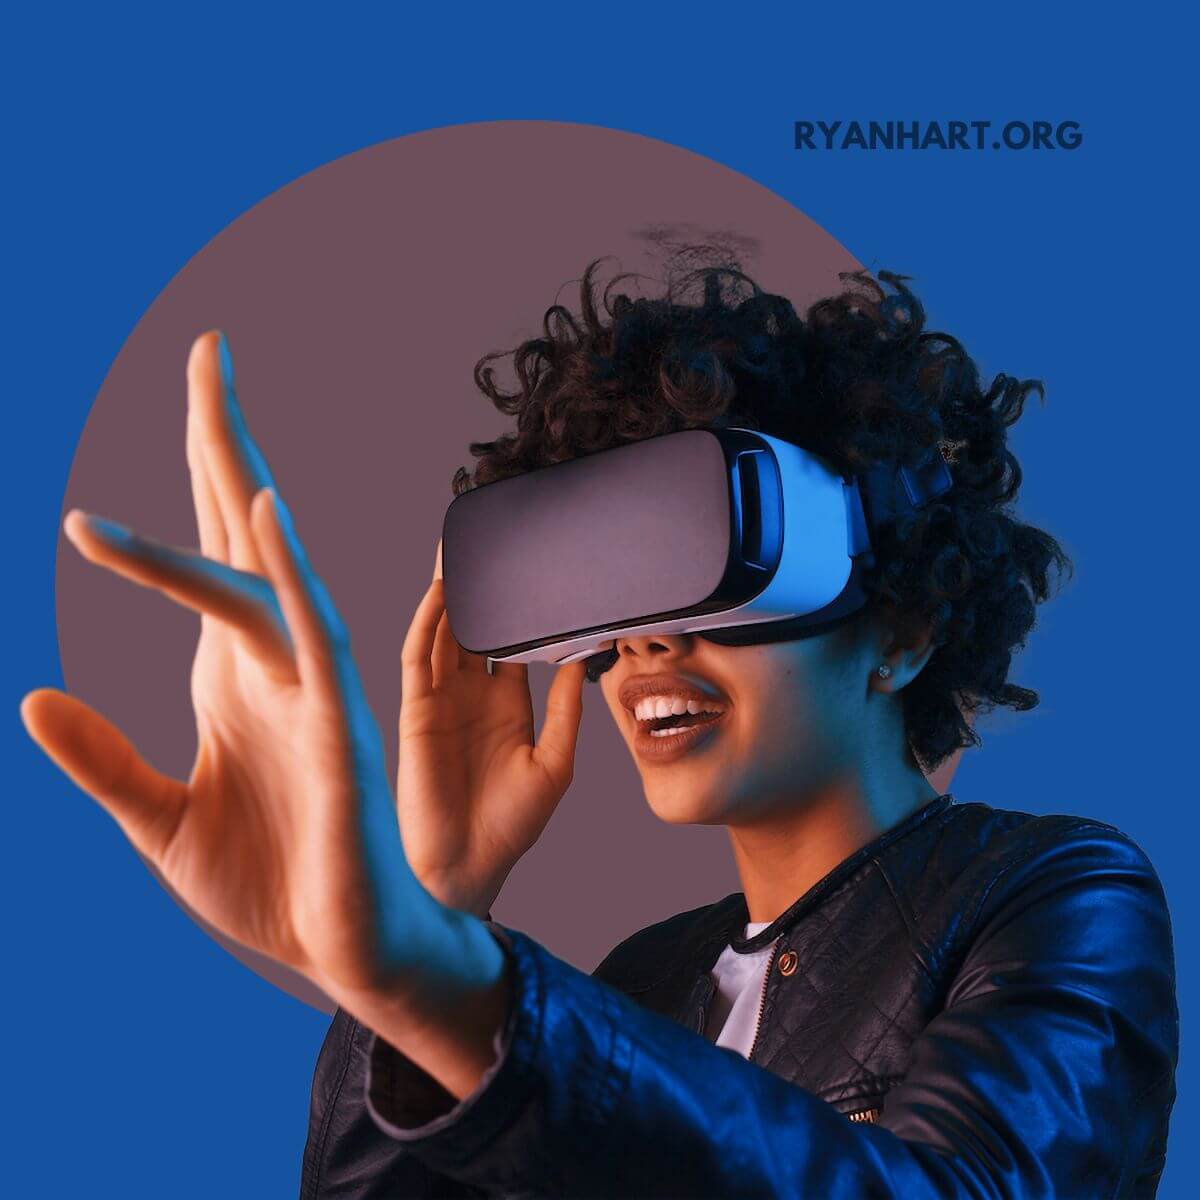  మెటావర్స్‌లో సింగిల్స్‌ను కలవడానికి 7 ఉత్తమ VR డేటింగ్ యాప్‌లు